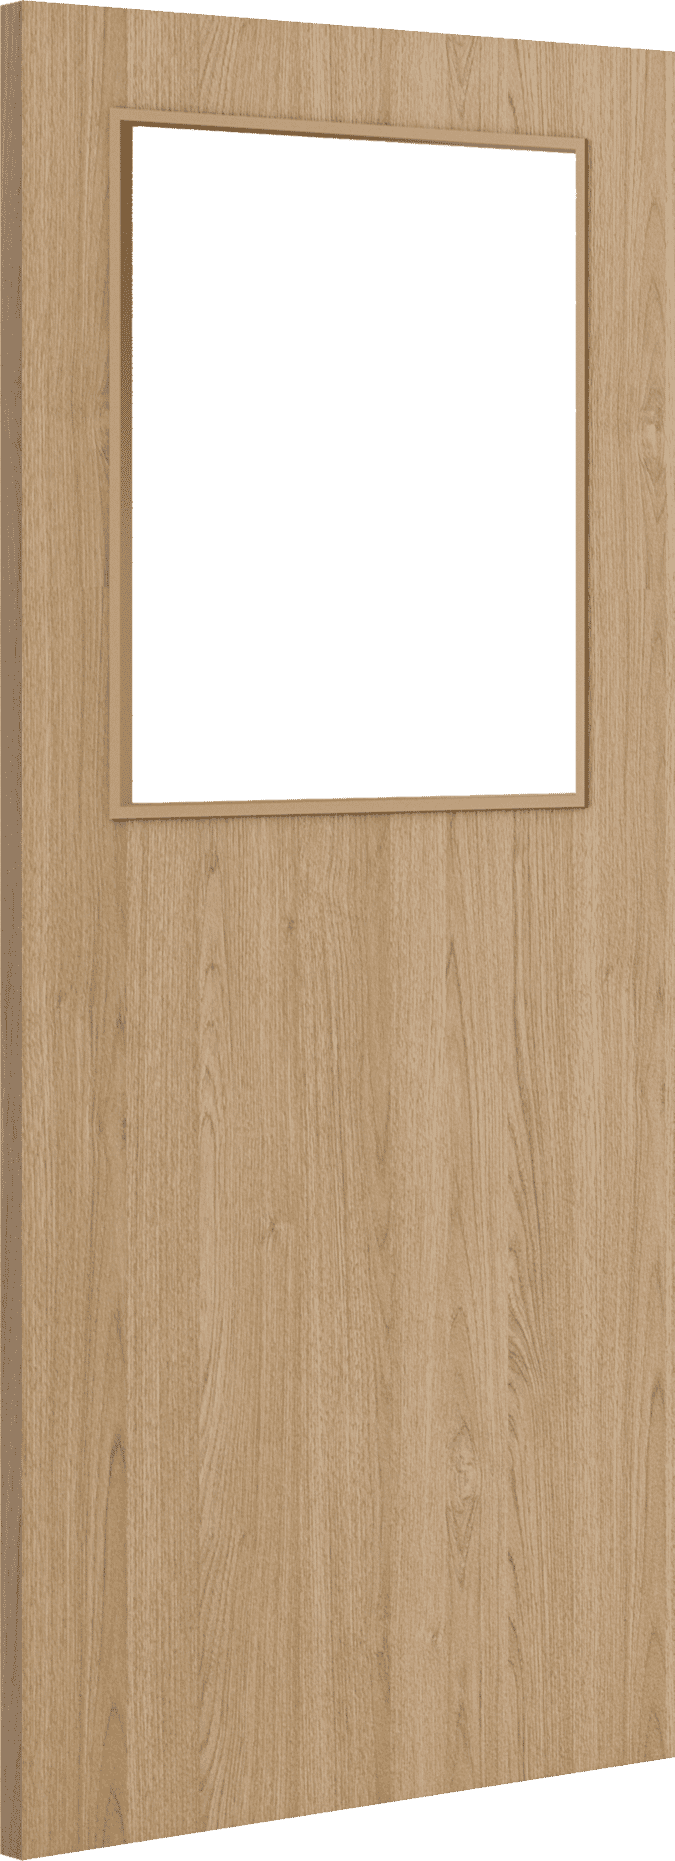 2040mm x 726mm x 44mm Architectural Oak 01 Clear Glazed - Prefinished FD30 Fire Door Blank